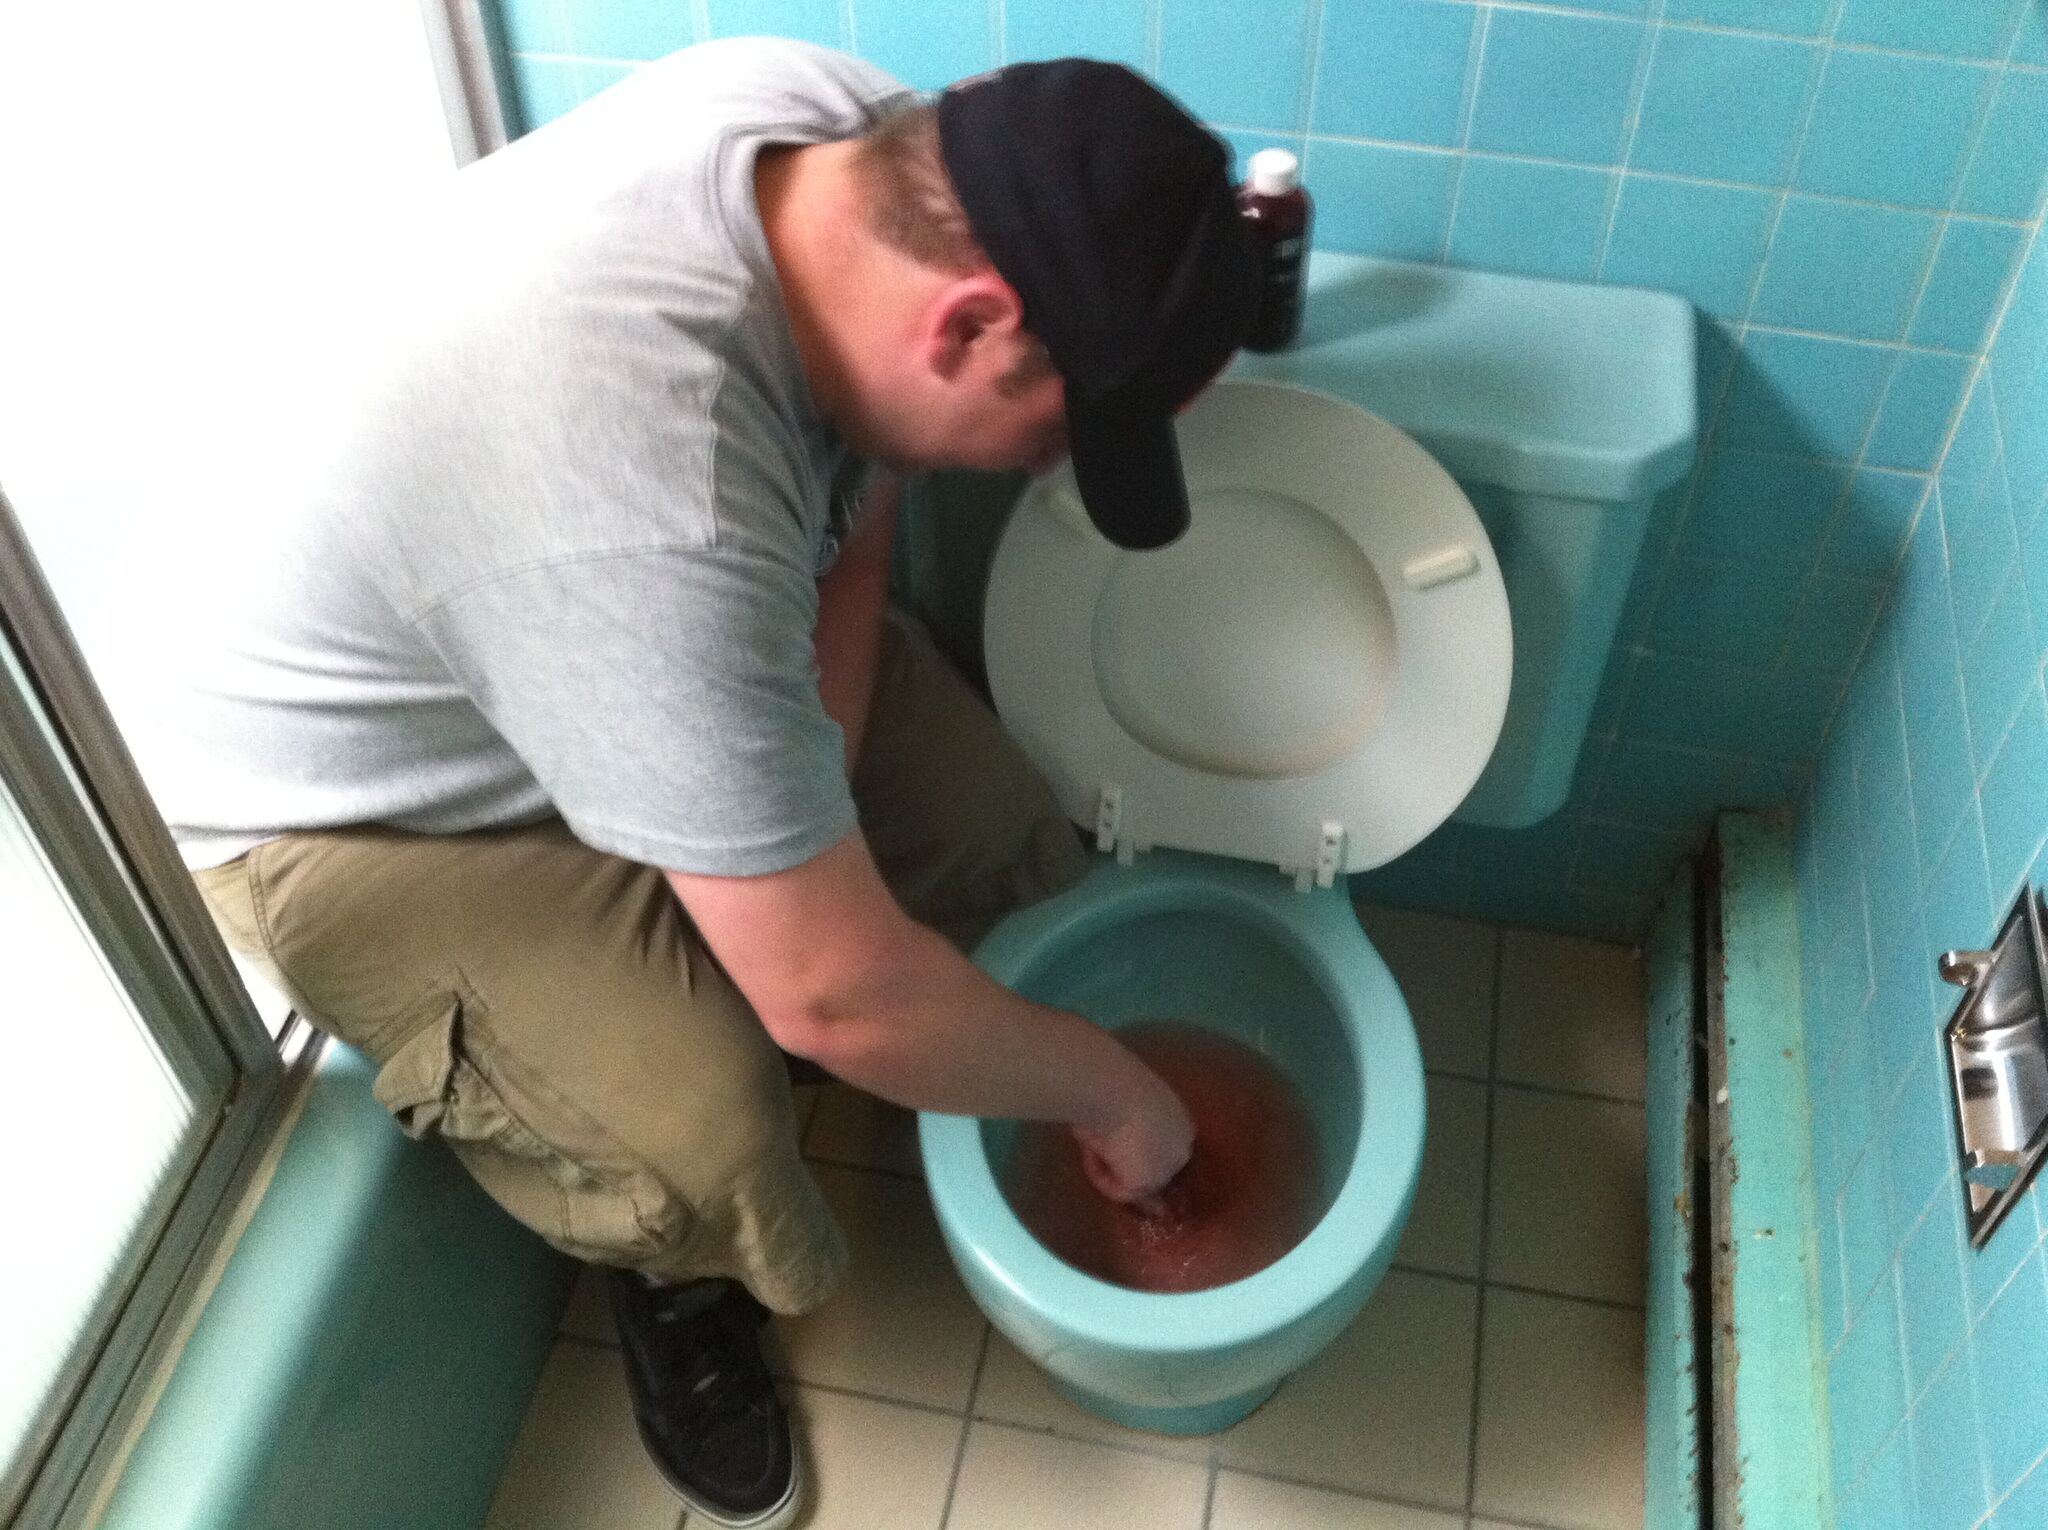  Schmidt prepping the toilet. 